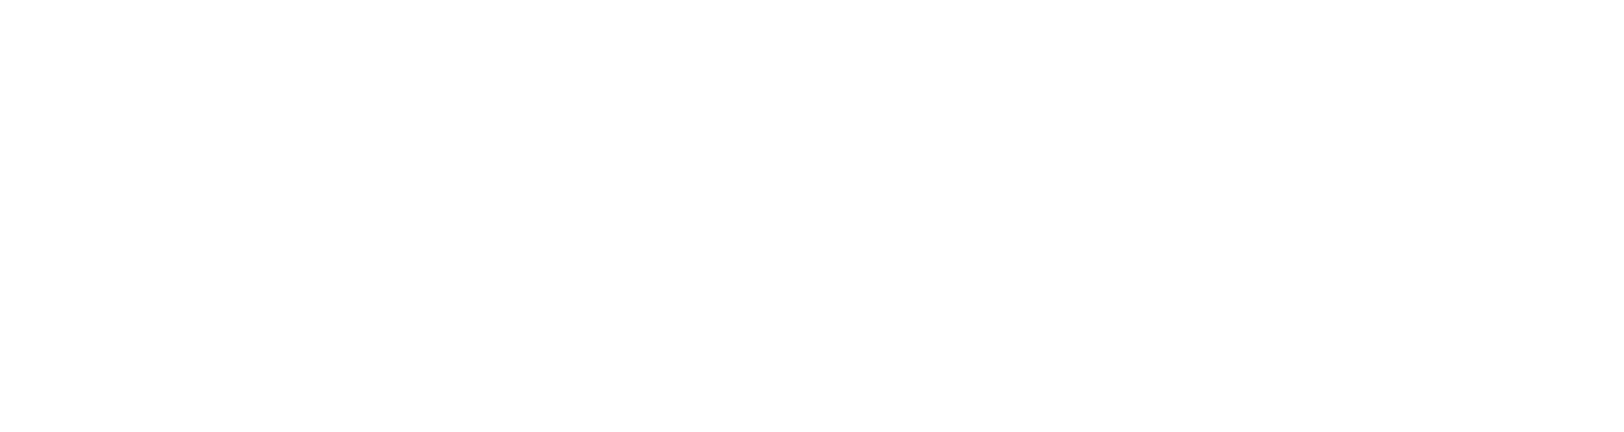 CEISMC Logo